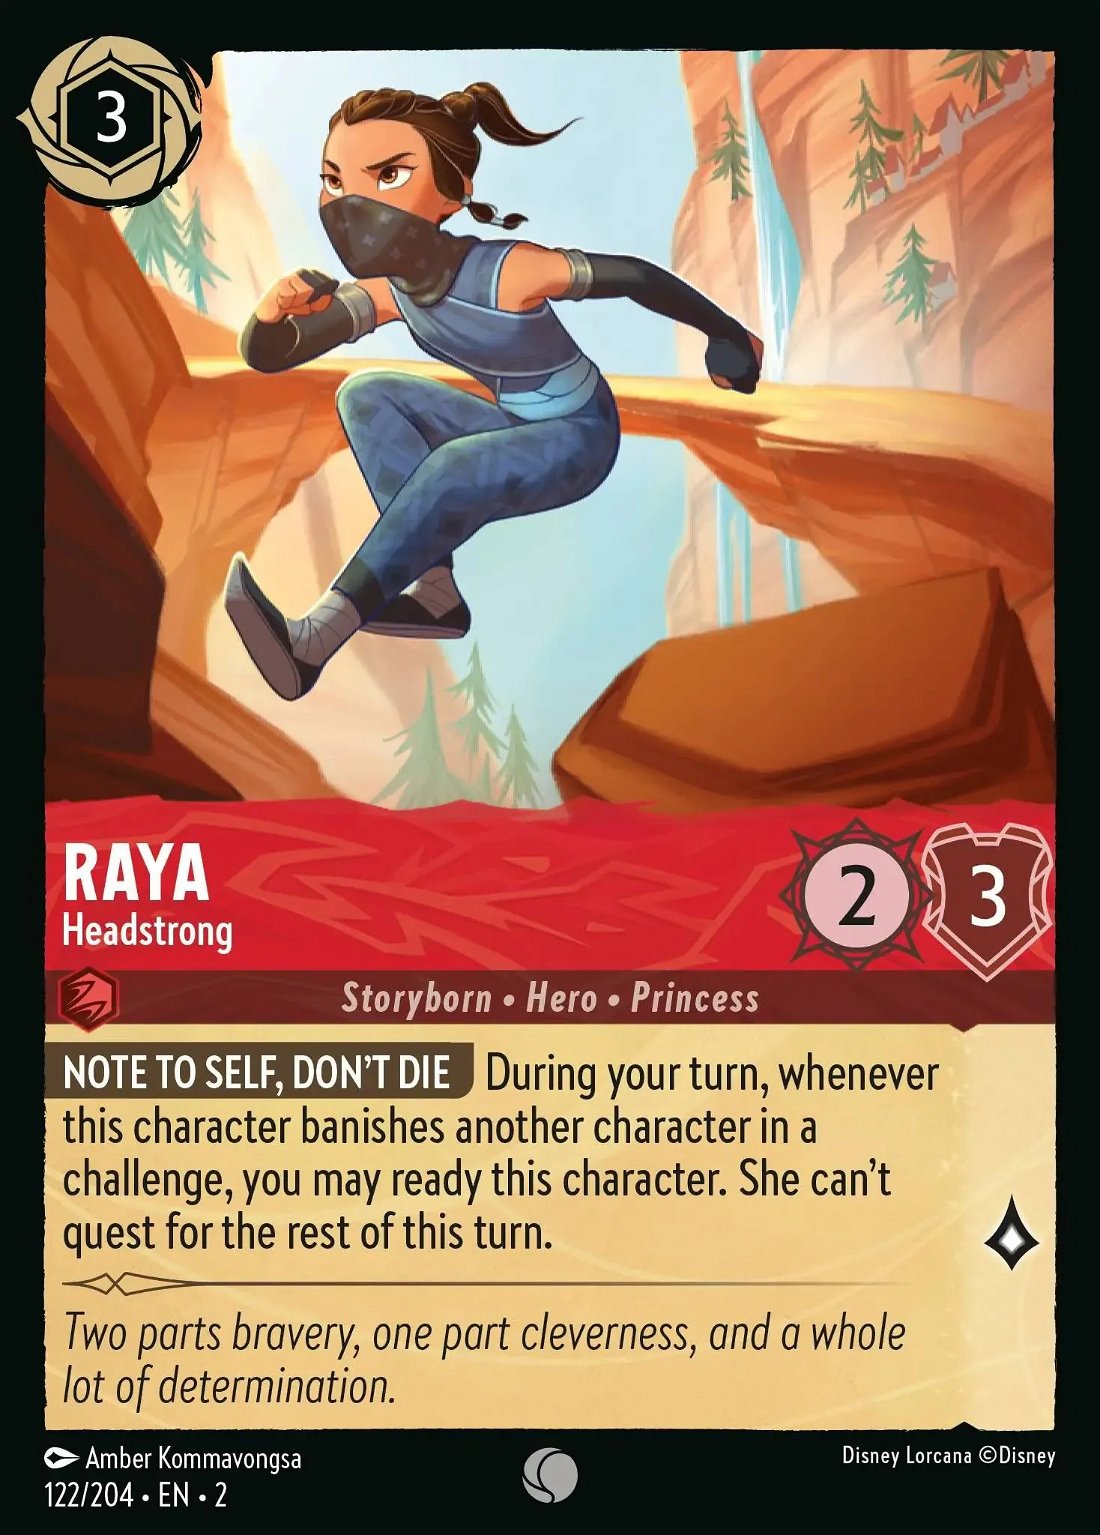 Raya - Headstrong Crop image Wallpaper